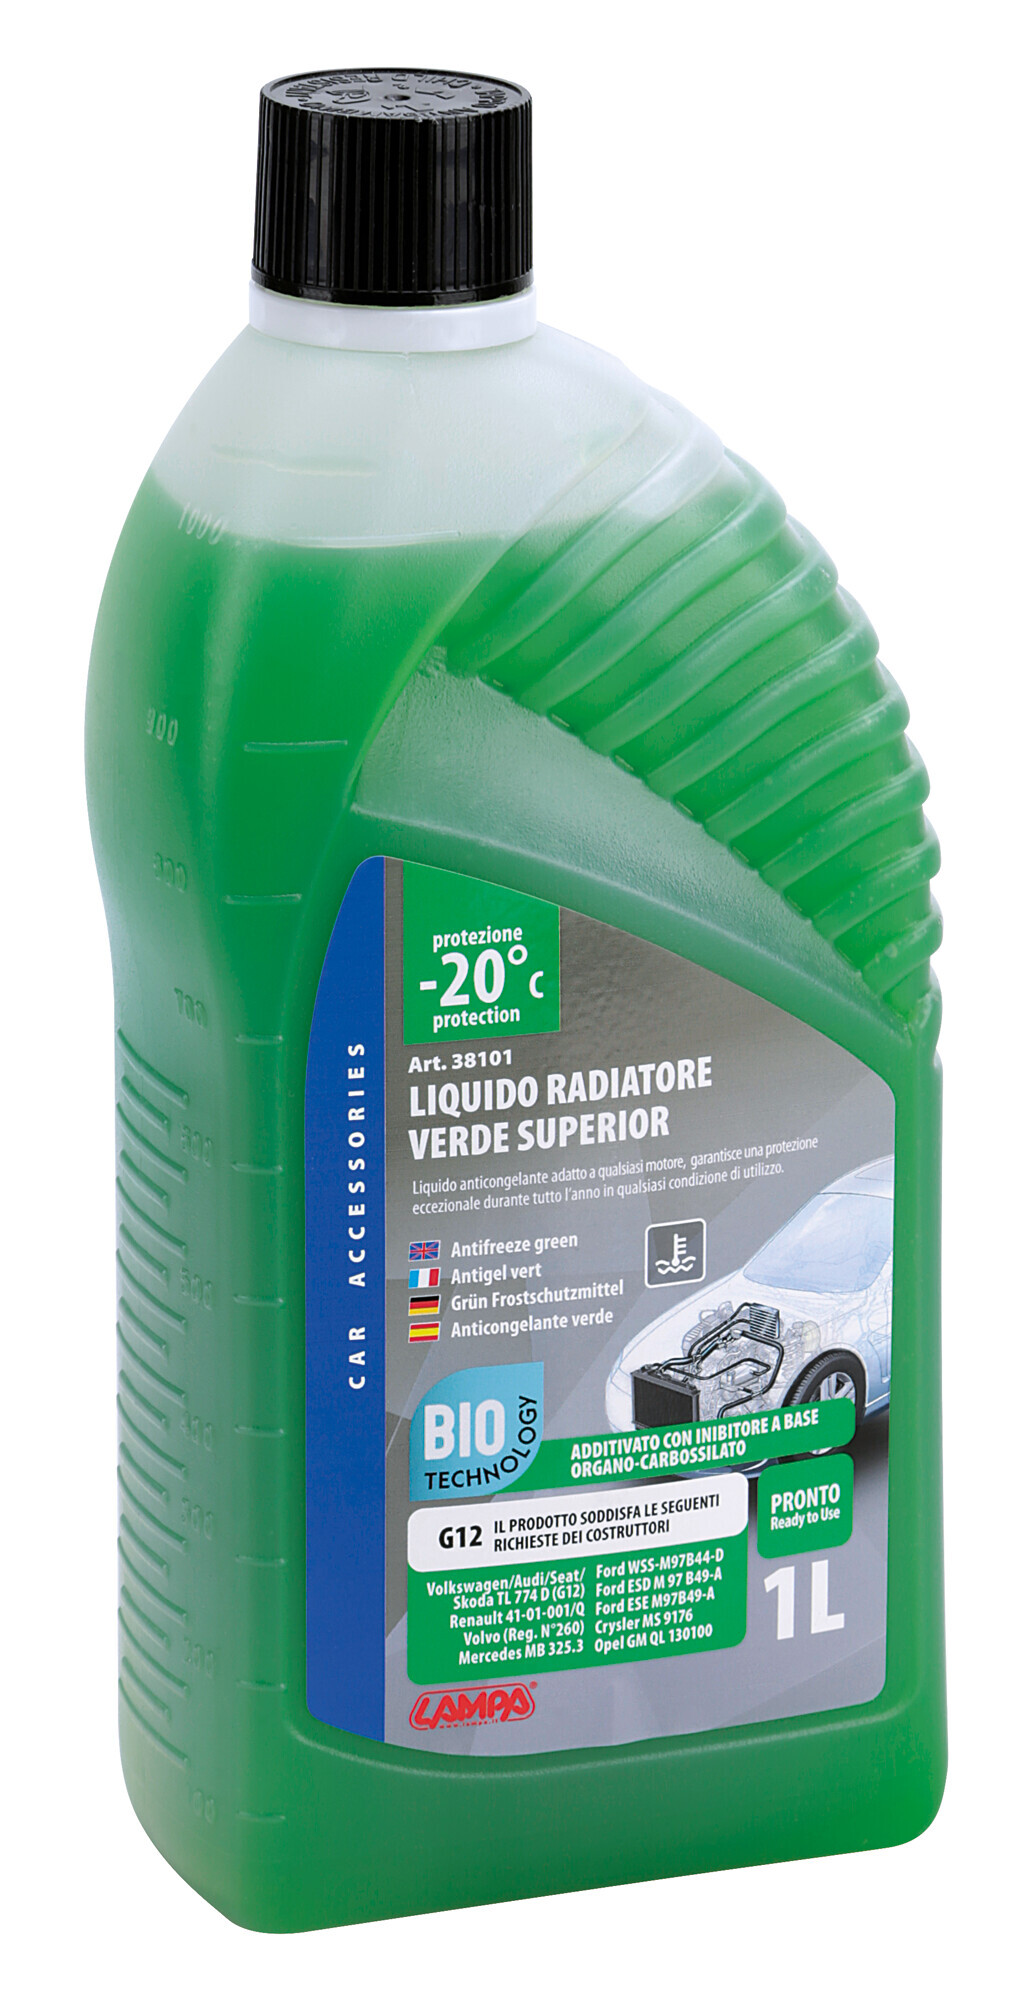 Superior-verde g12+, liquido antigelo radiatore (-20°c) – 1 l